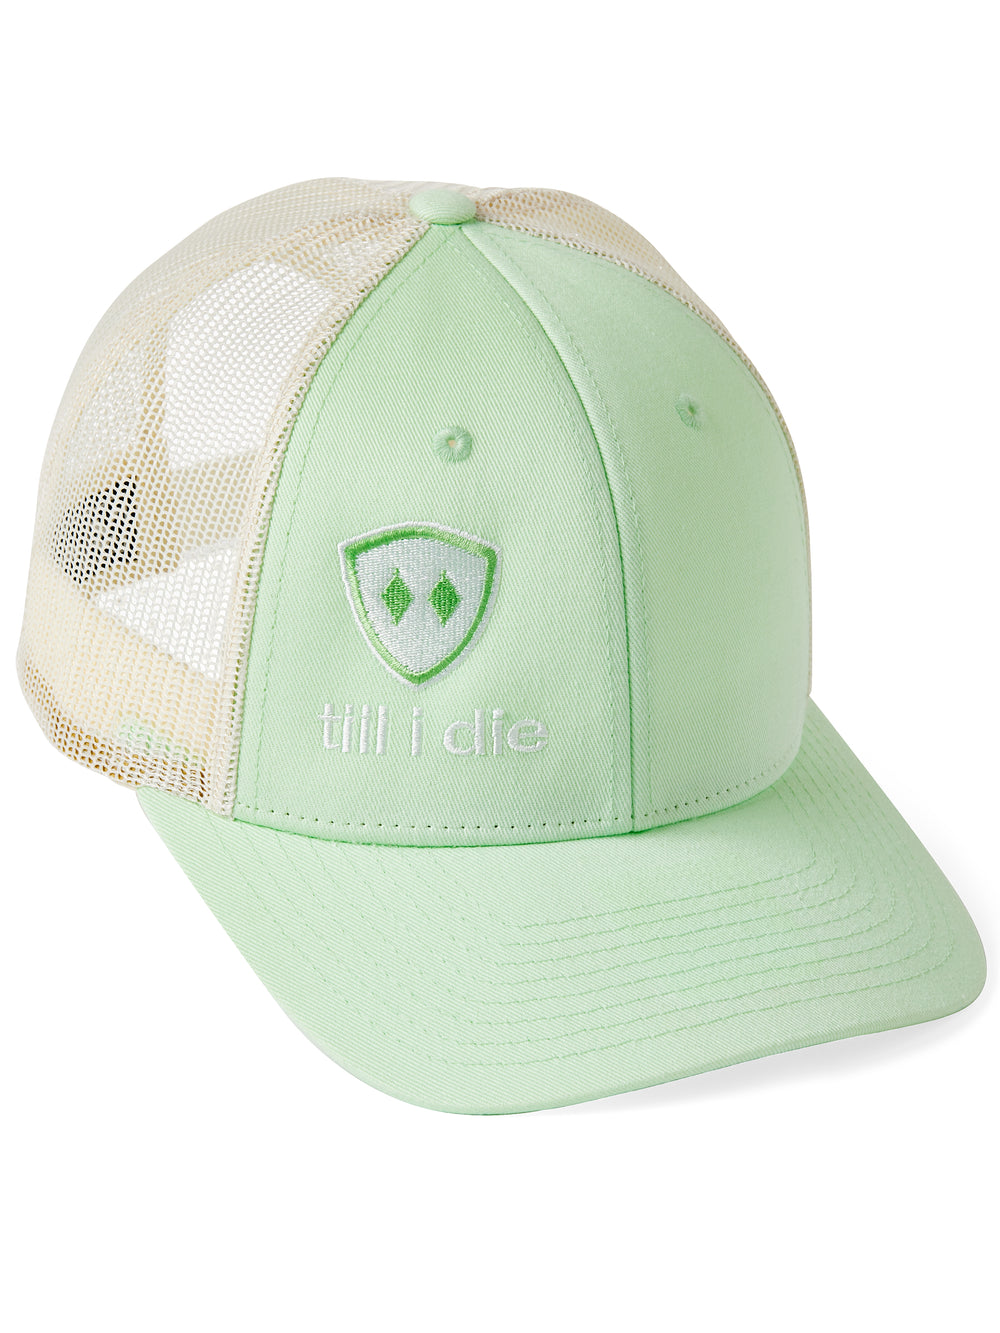 Till I Die Logo // Classic Trucker Hat // Mint Green & White + Green & White